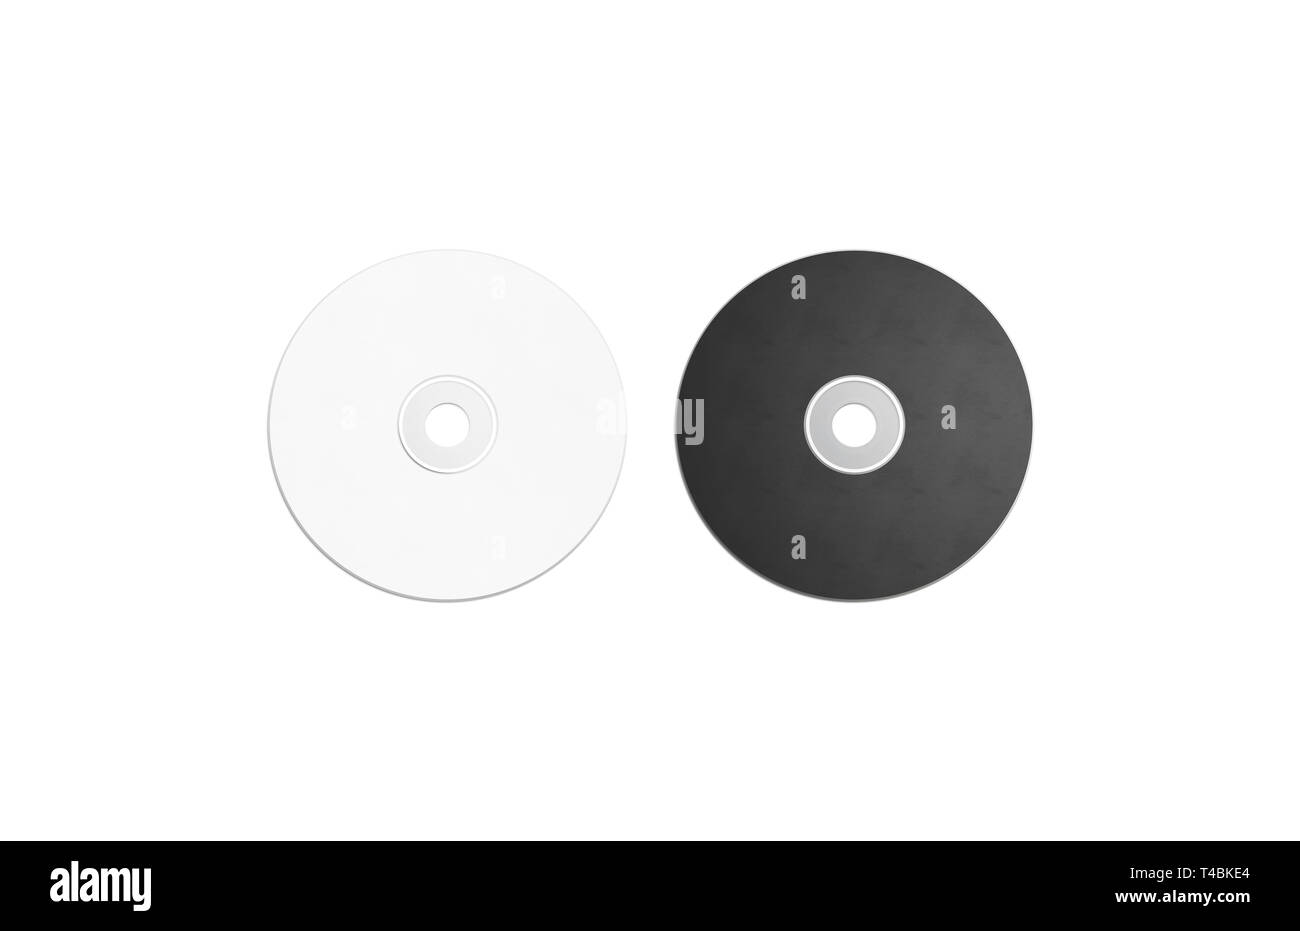 Vuoto in bianco e nero un compact disk mockup impostare, isolato, rendering  3d. Svuotare il lettore multimediale mock up, vista dall'alto. Cancellare  il cd o il dvd per il modello di archiviazione